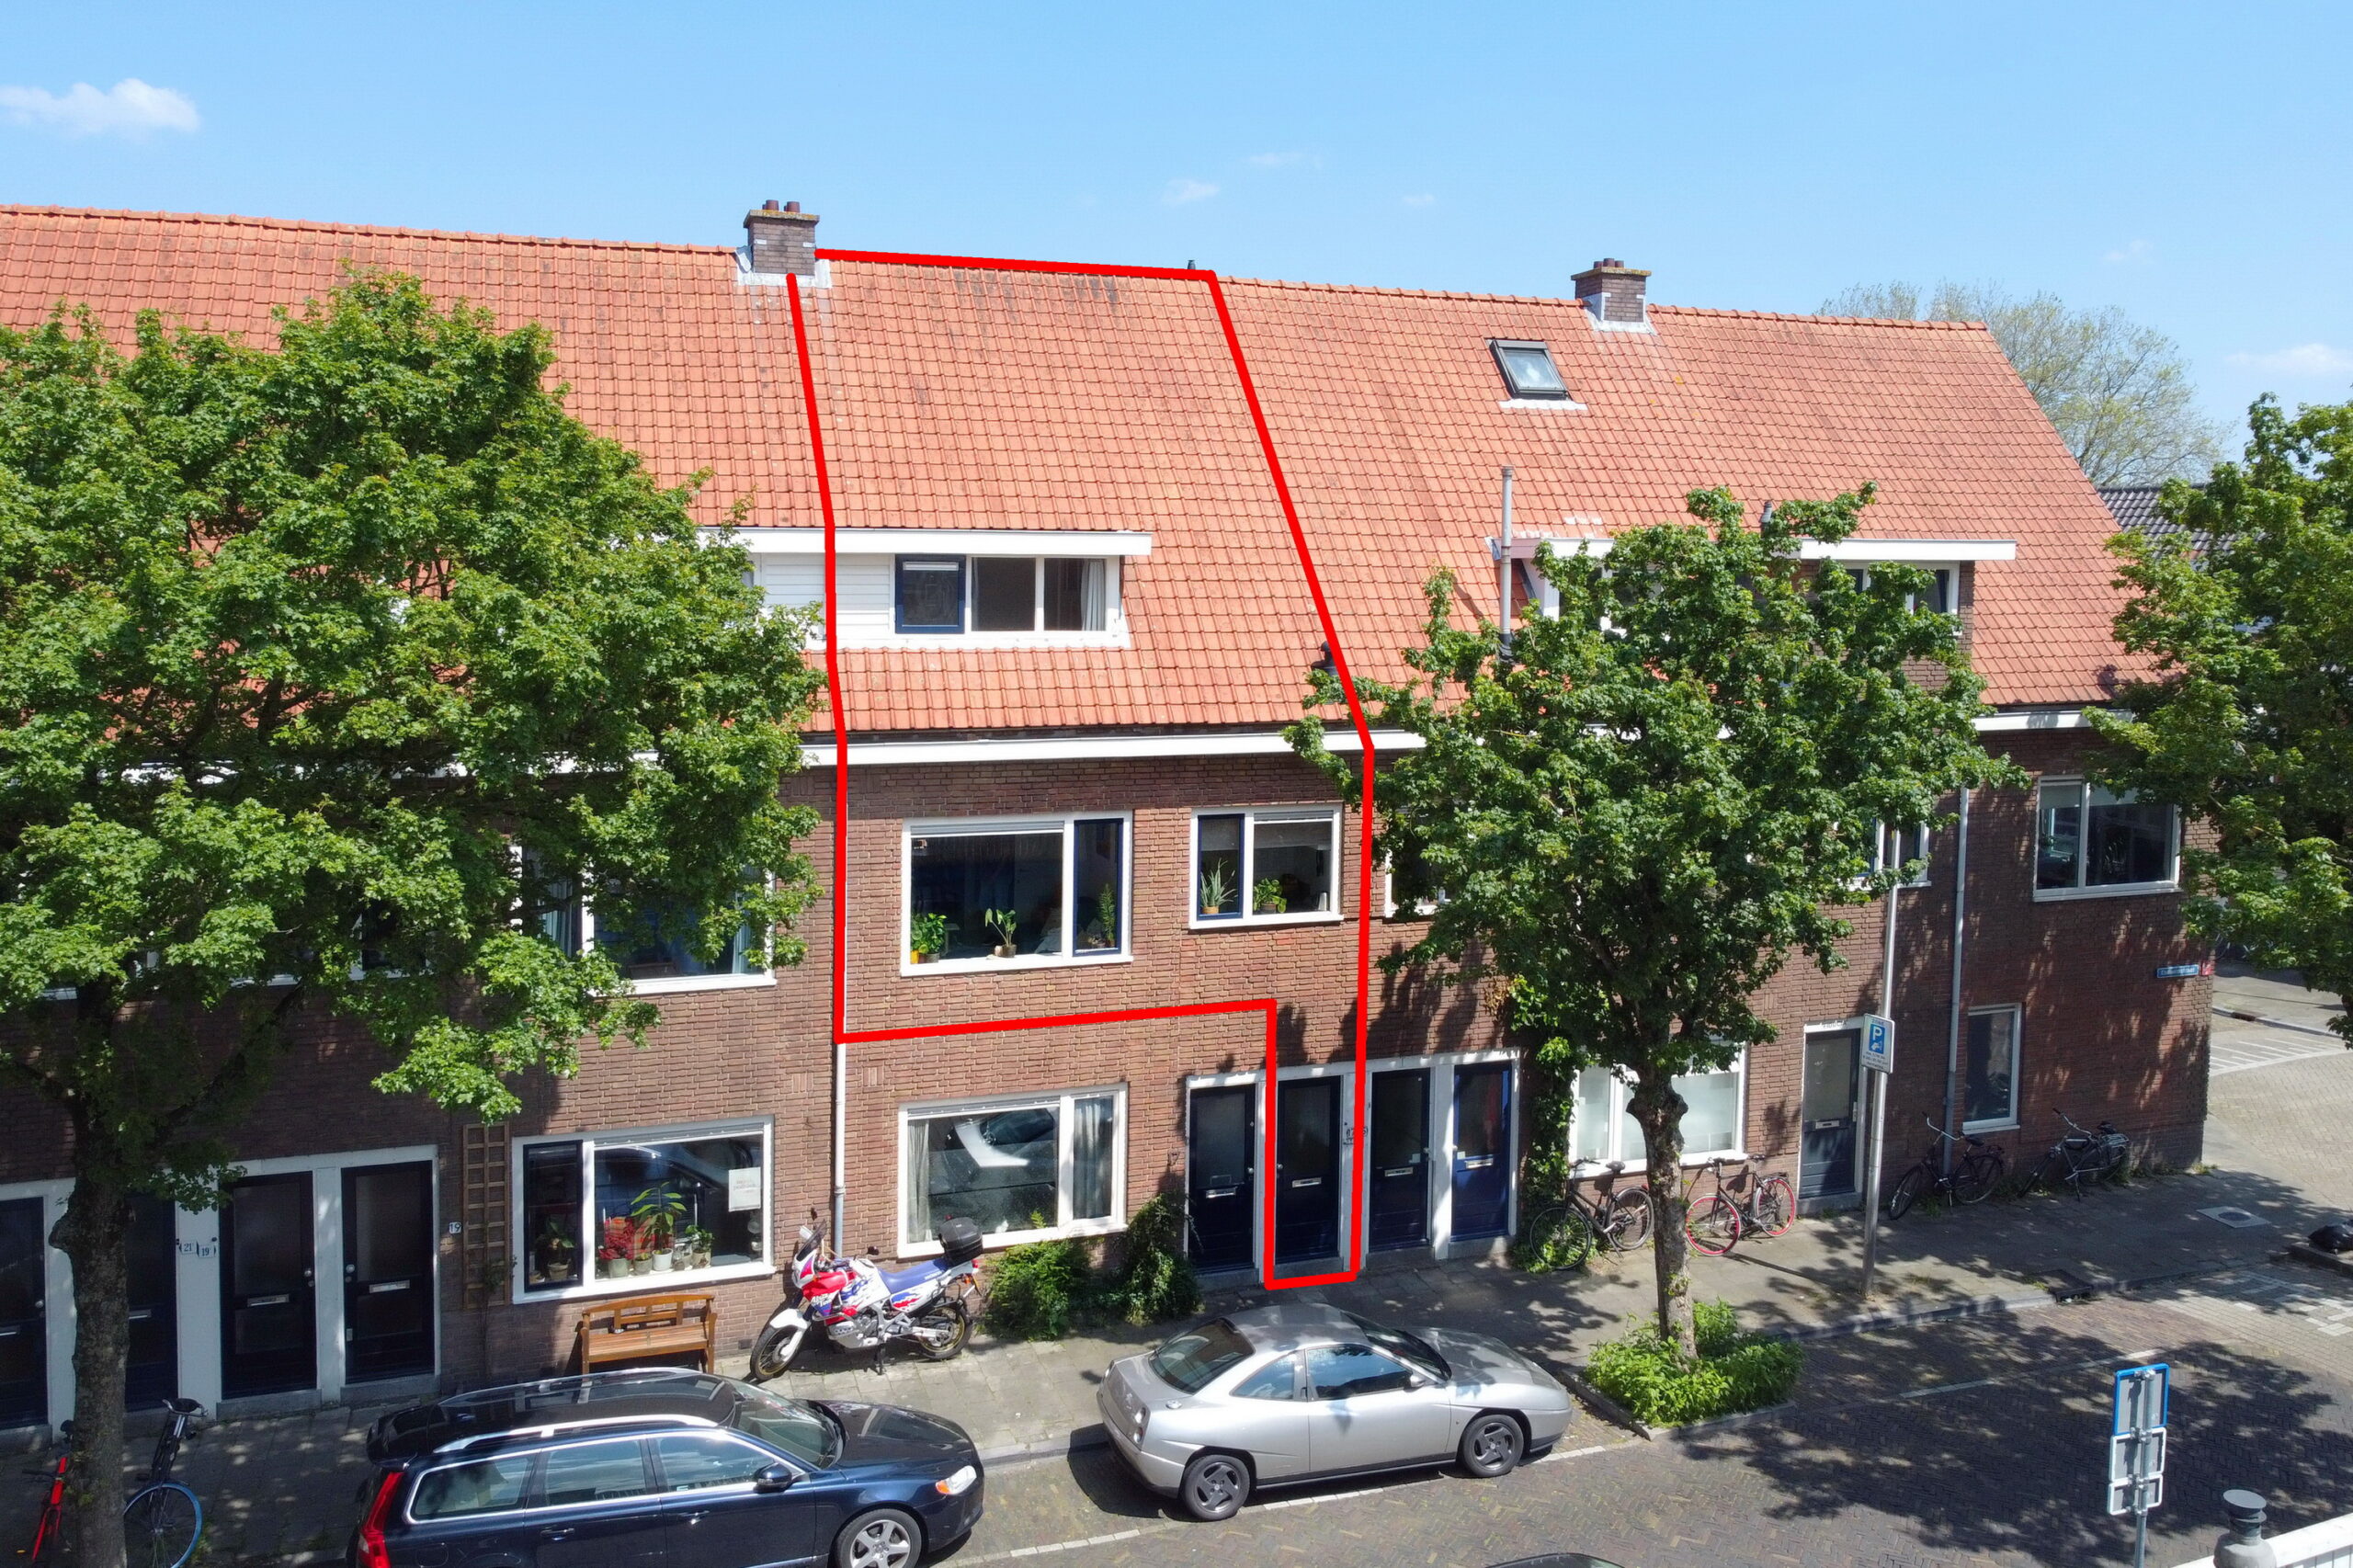 Esdoornstraat 17-1, 3551 AG Utrecht